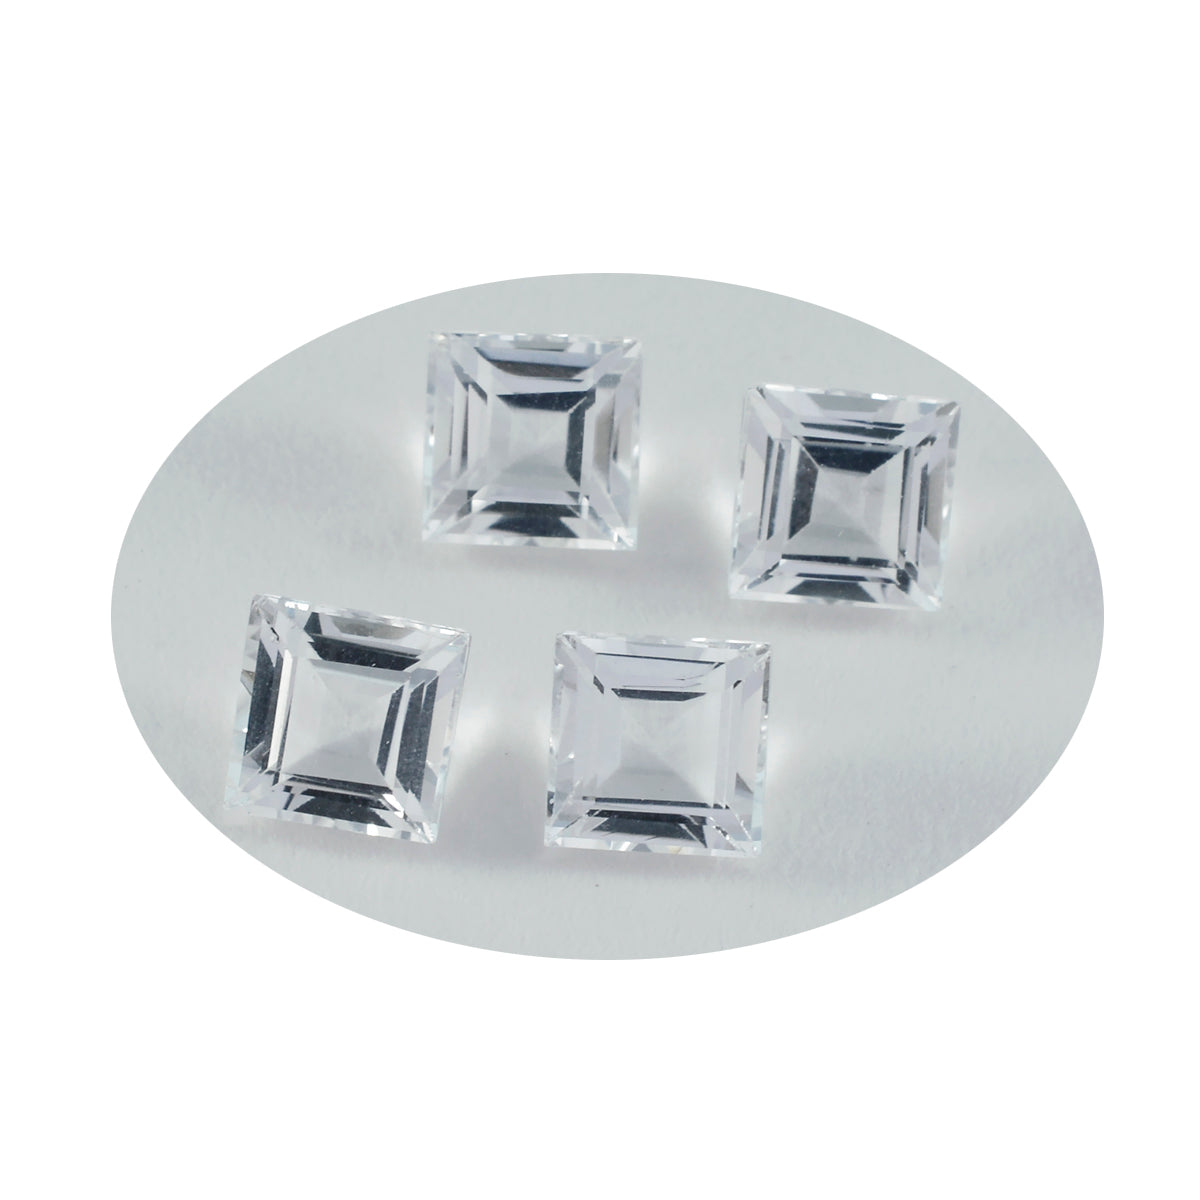 riyogems 1шт белый кристалл кварца ограненный 9х9 мм квадратной формы драгоценные камни отличного качества